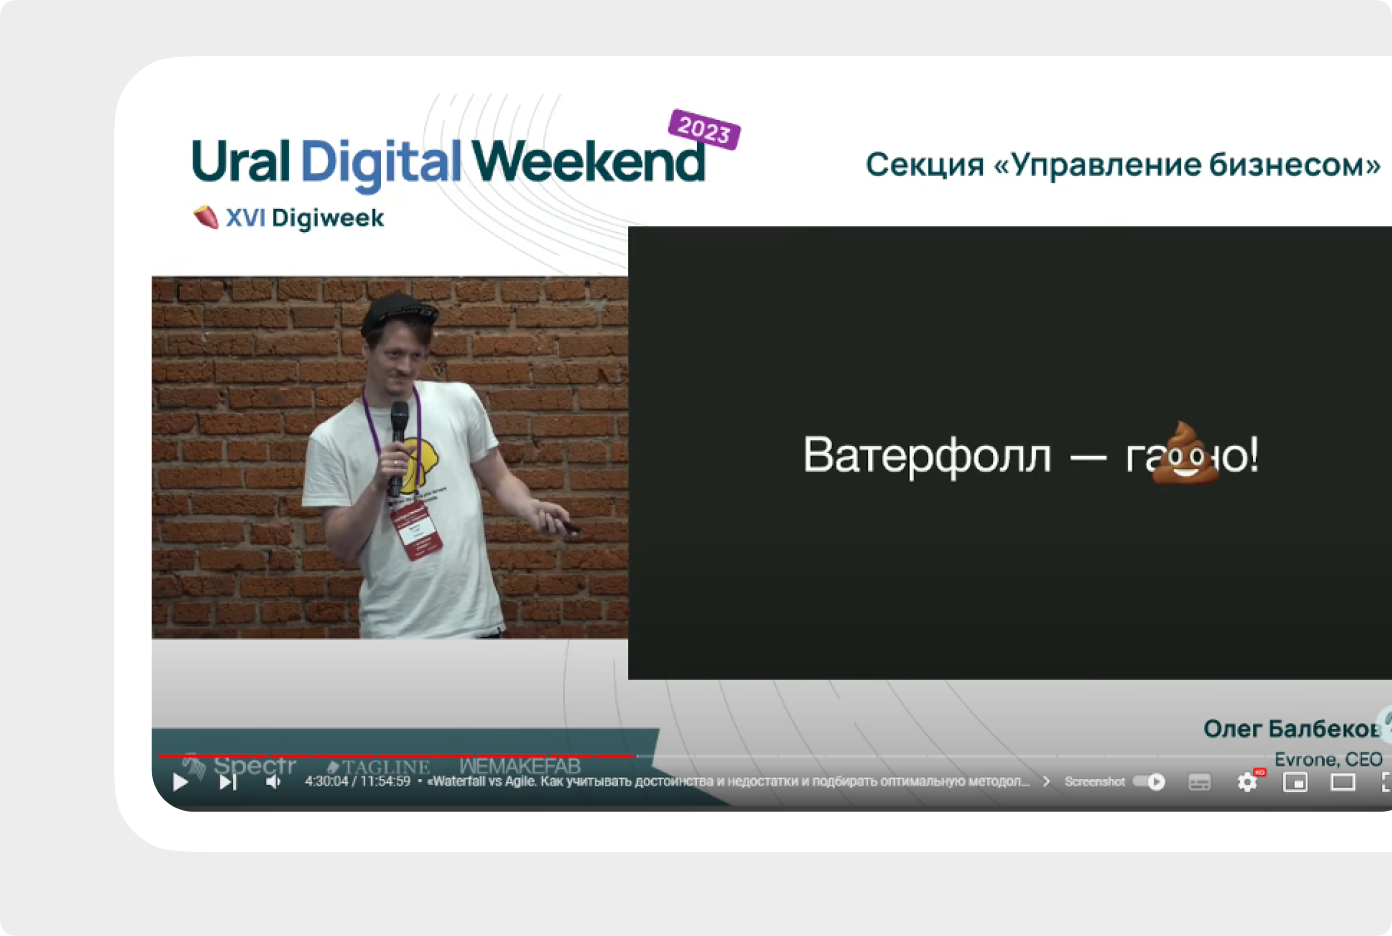 Глеб Михеев из Skillbox начал свой доклад на Ural Digital Weekend 2023 с вот такой нестандартной оценки, которая помогла ему встряхнуть аудиторию